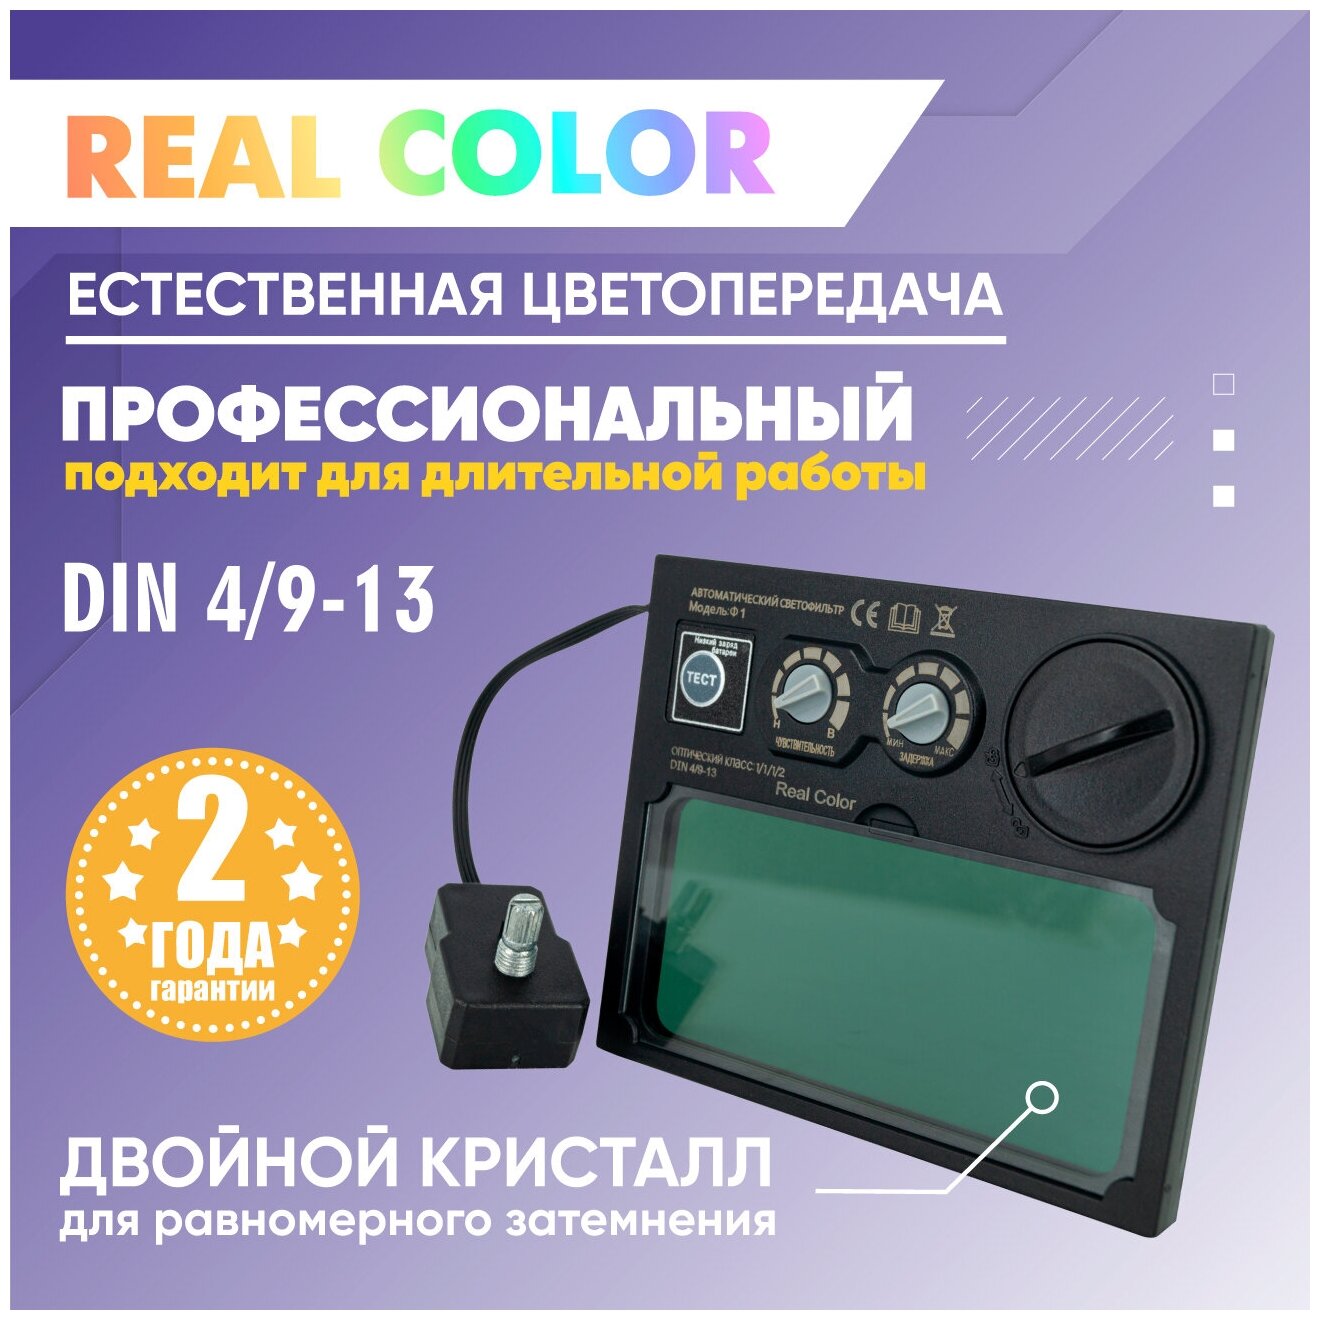 Светофильтр для сварочной маски Real Color SY93D Ф1 СЕТ DIN 4/9-13 с кнопкой самотестирования, плавная регулировка, хамелеон